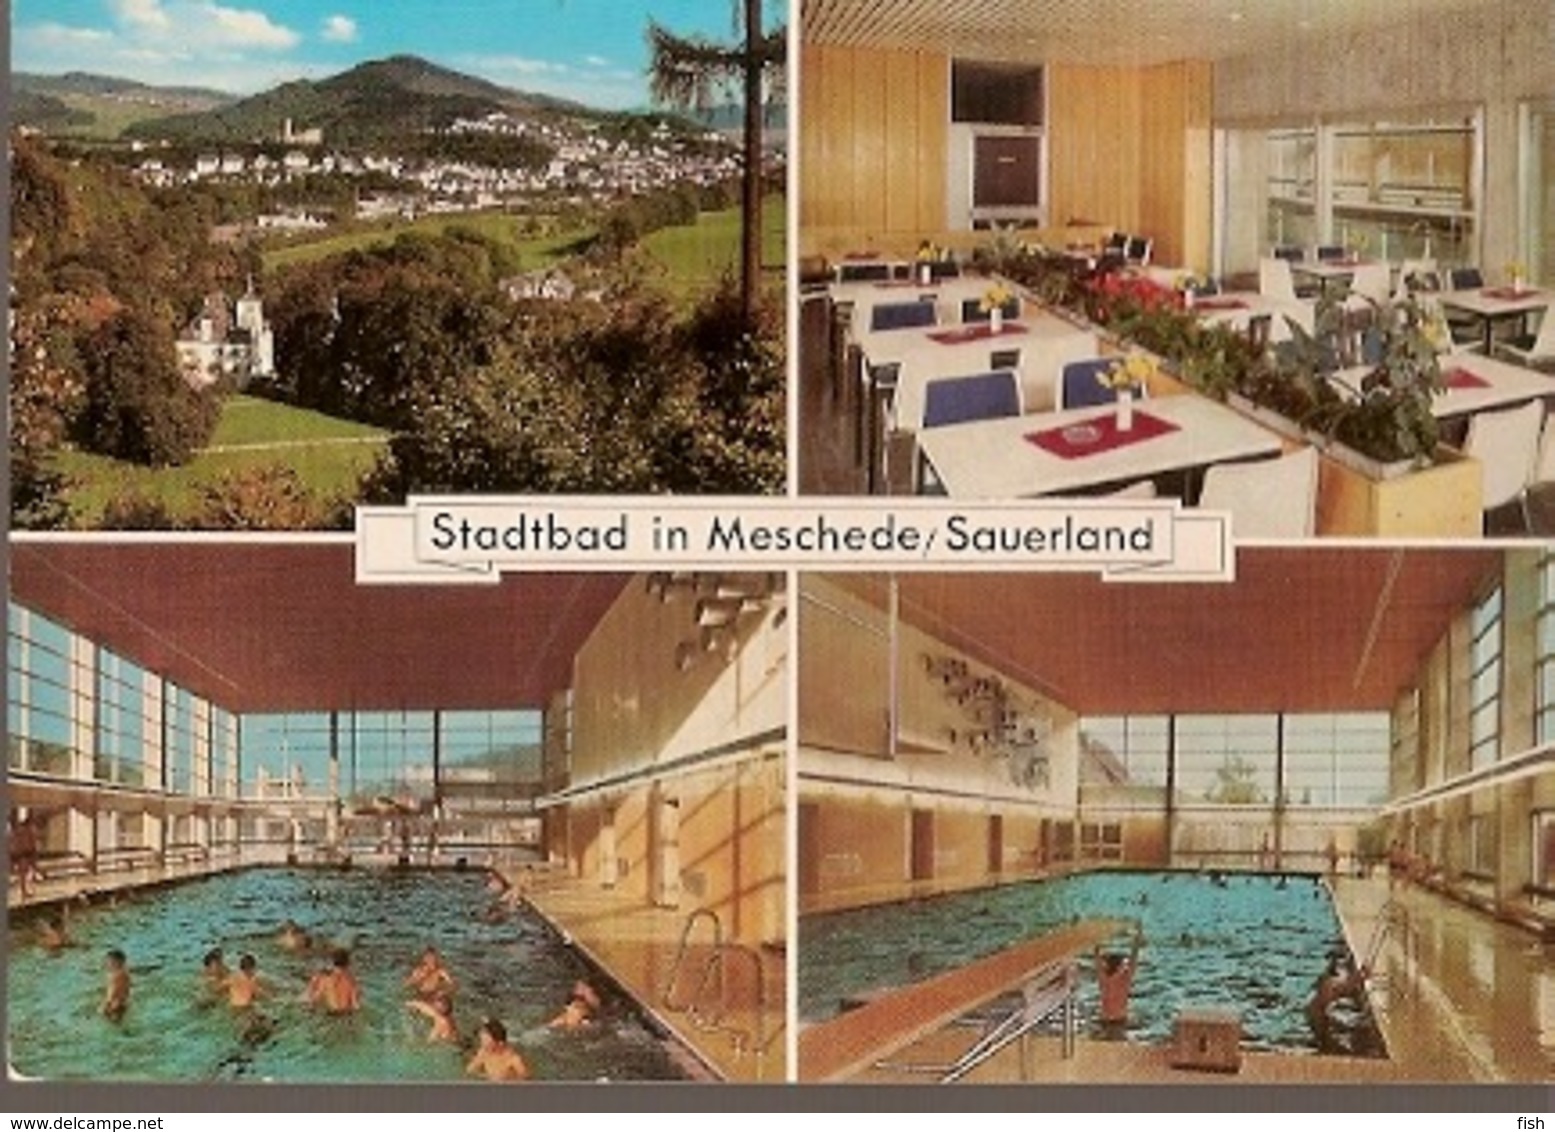 Germany & Circulated, Stadtbad  In Meschede, Sauerland, Berlin 1973 (4453) - Meschede